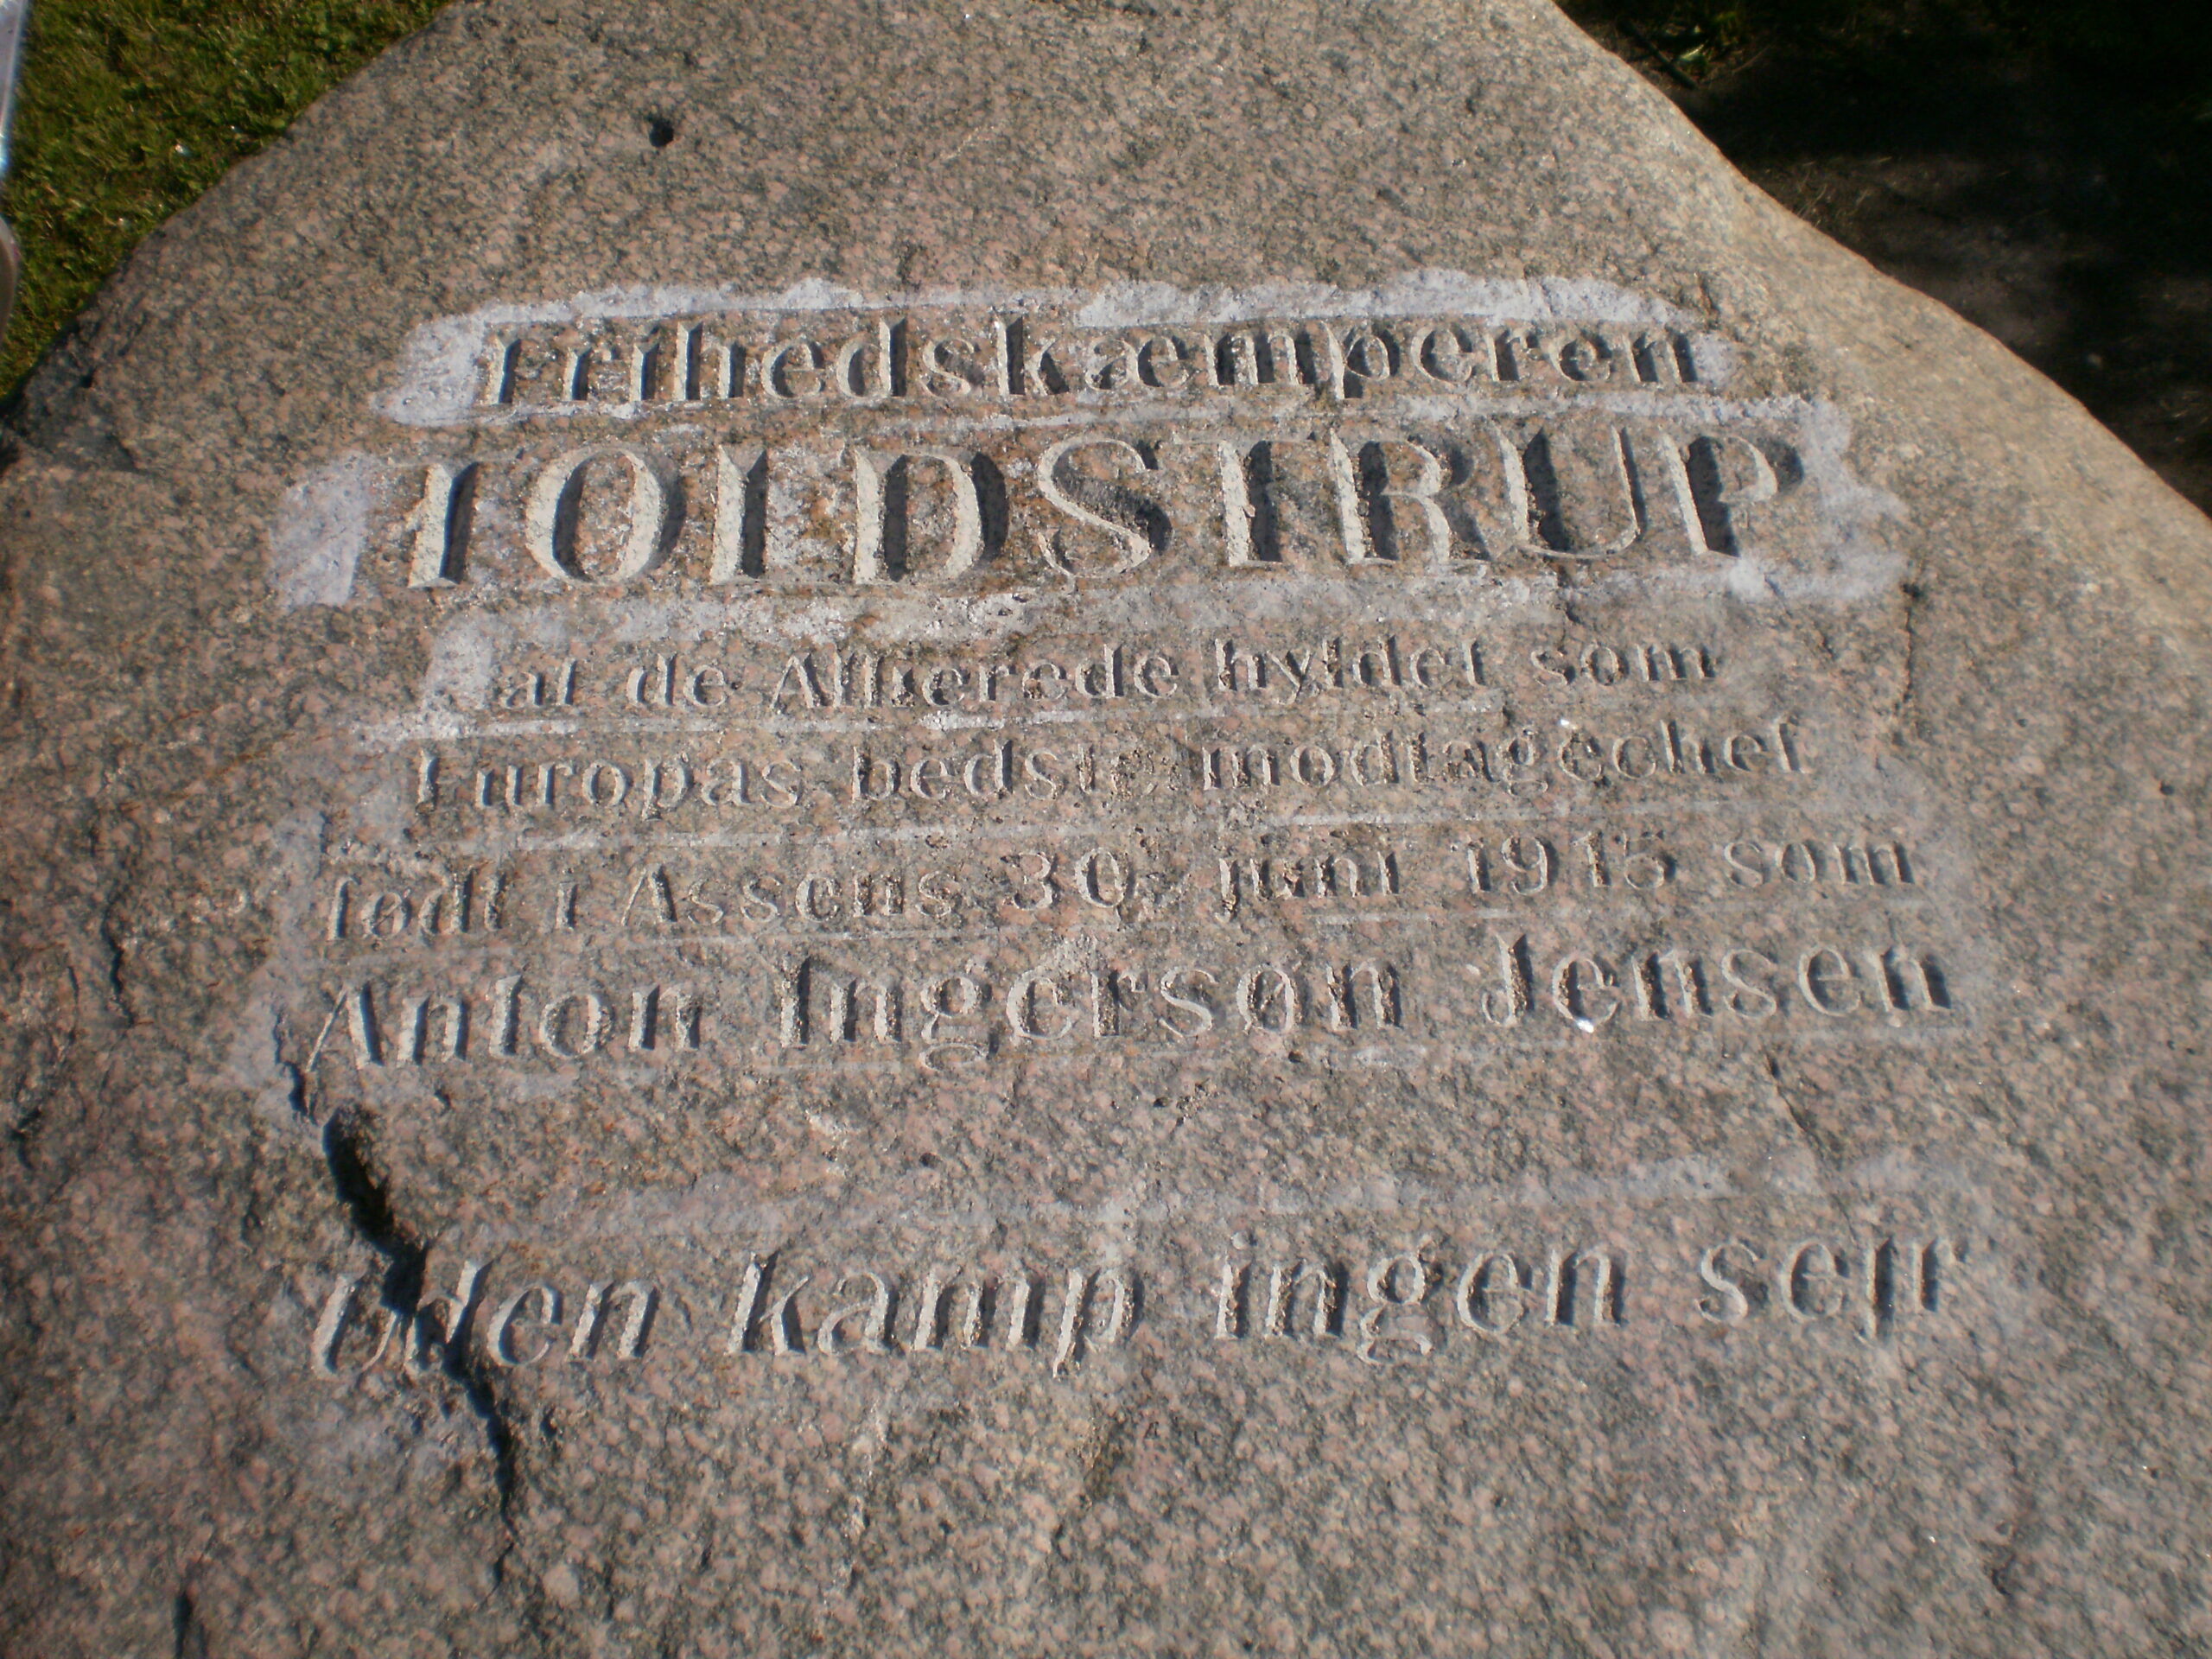 Udhugning af tekst på mindesten til "Toldstrup". 2013